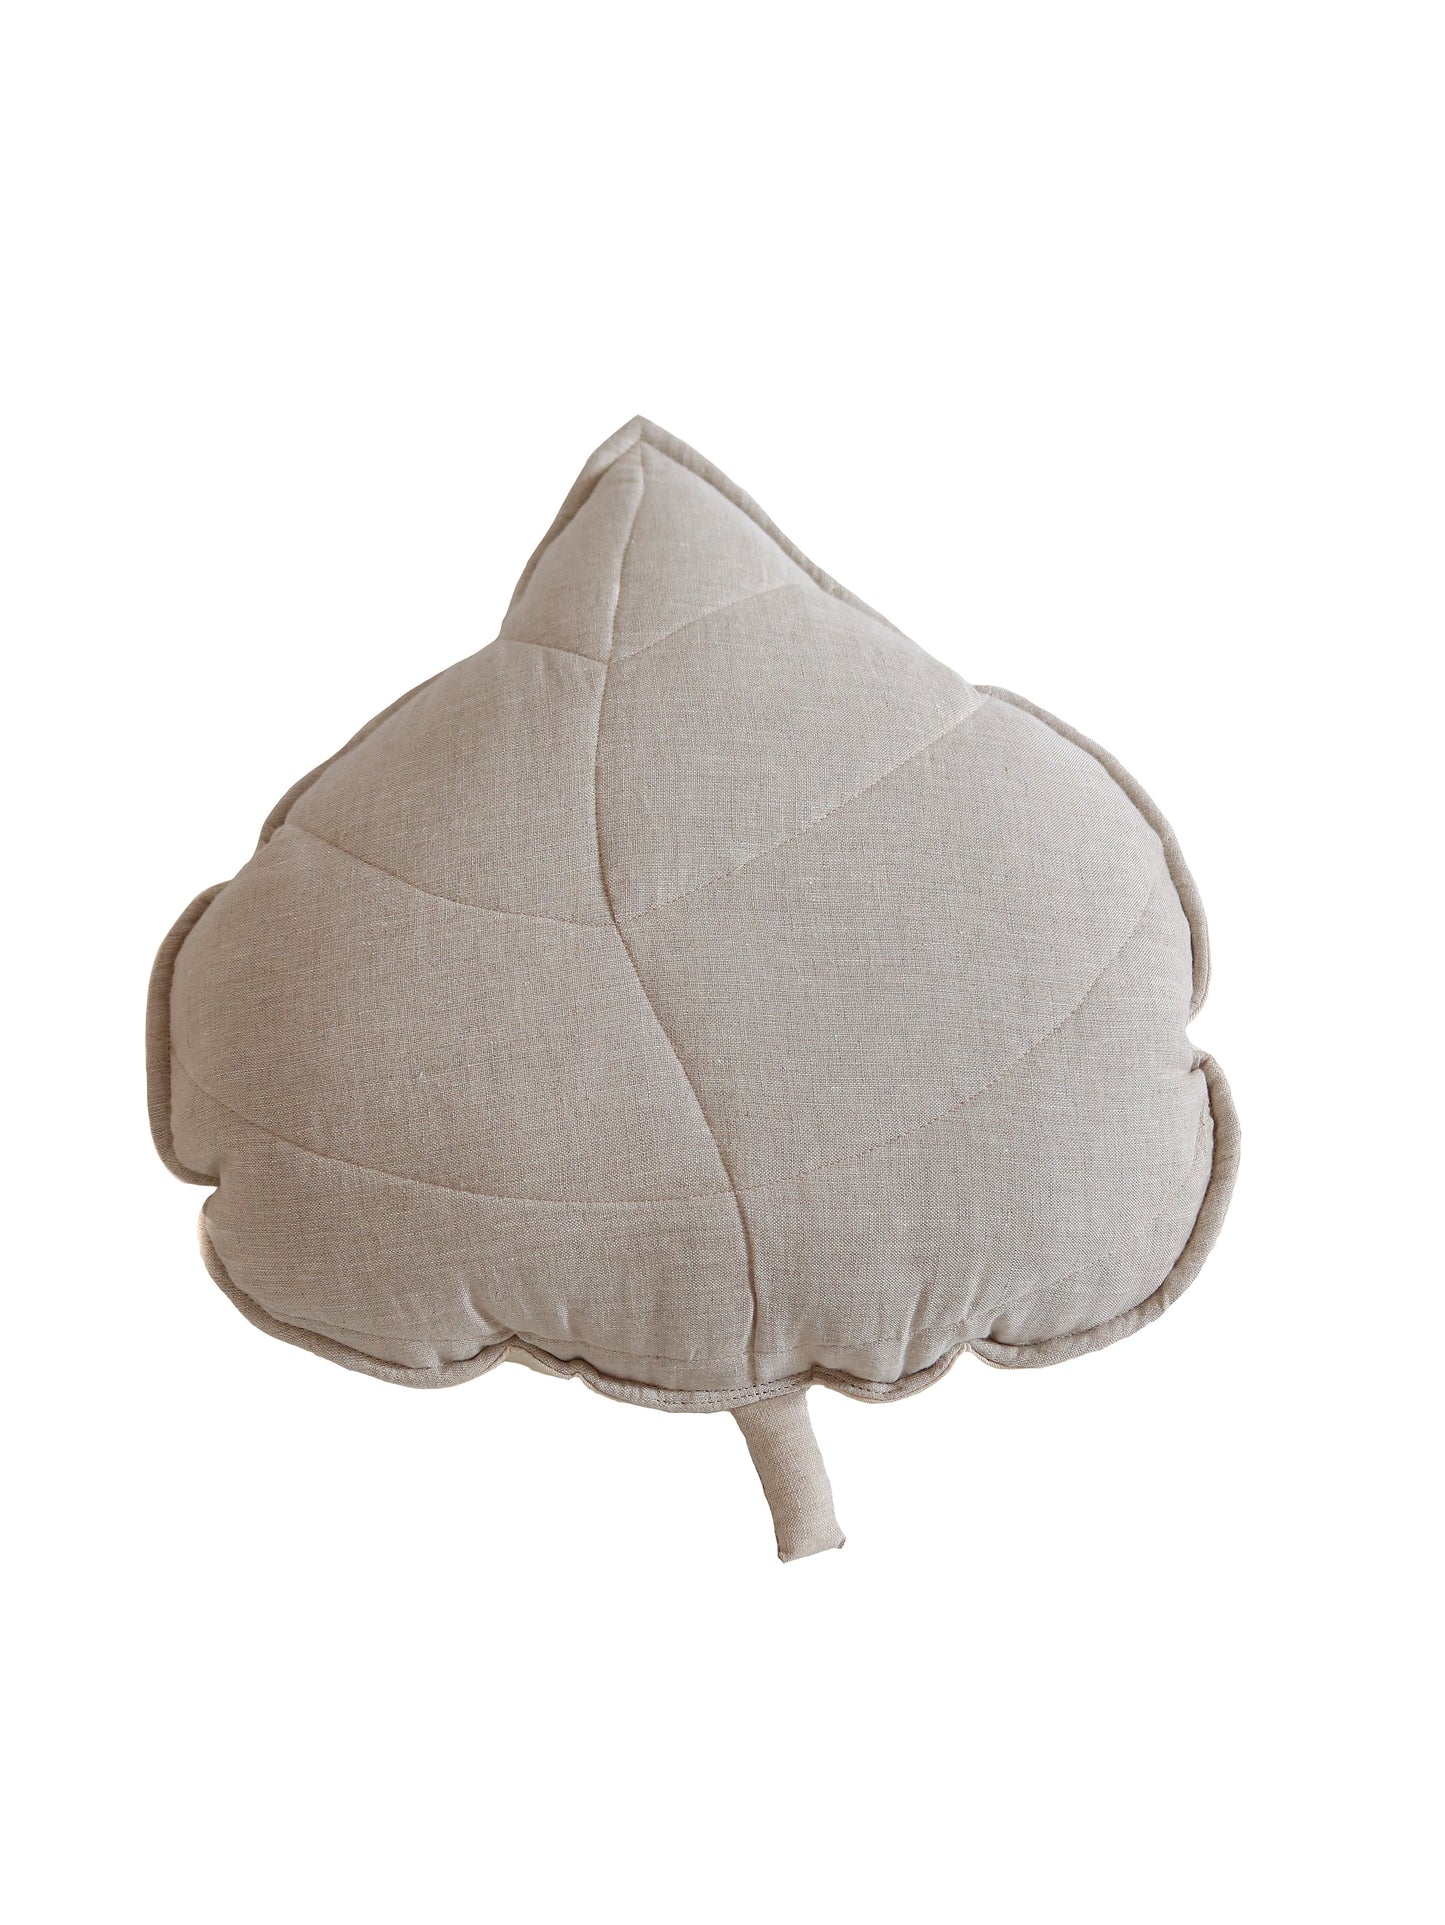 Linen “Sand” Leaf Pillow